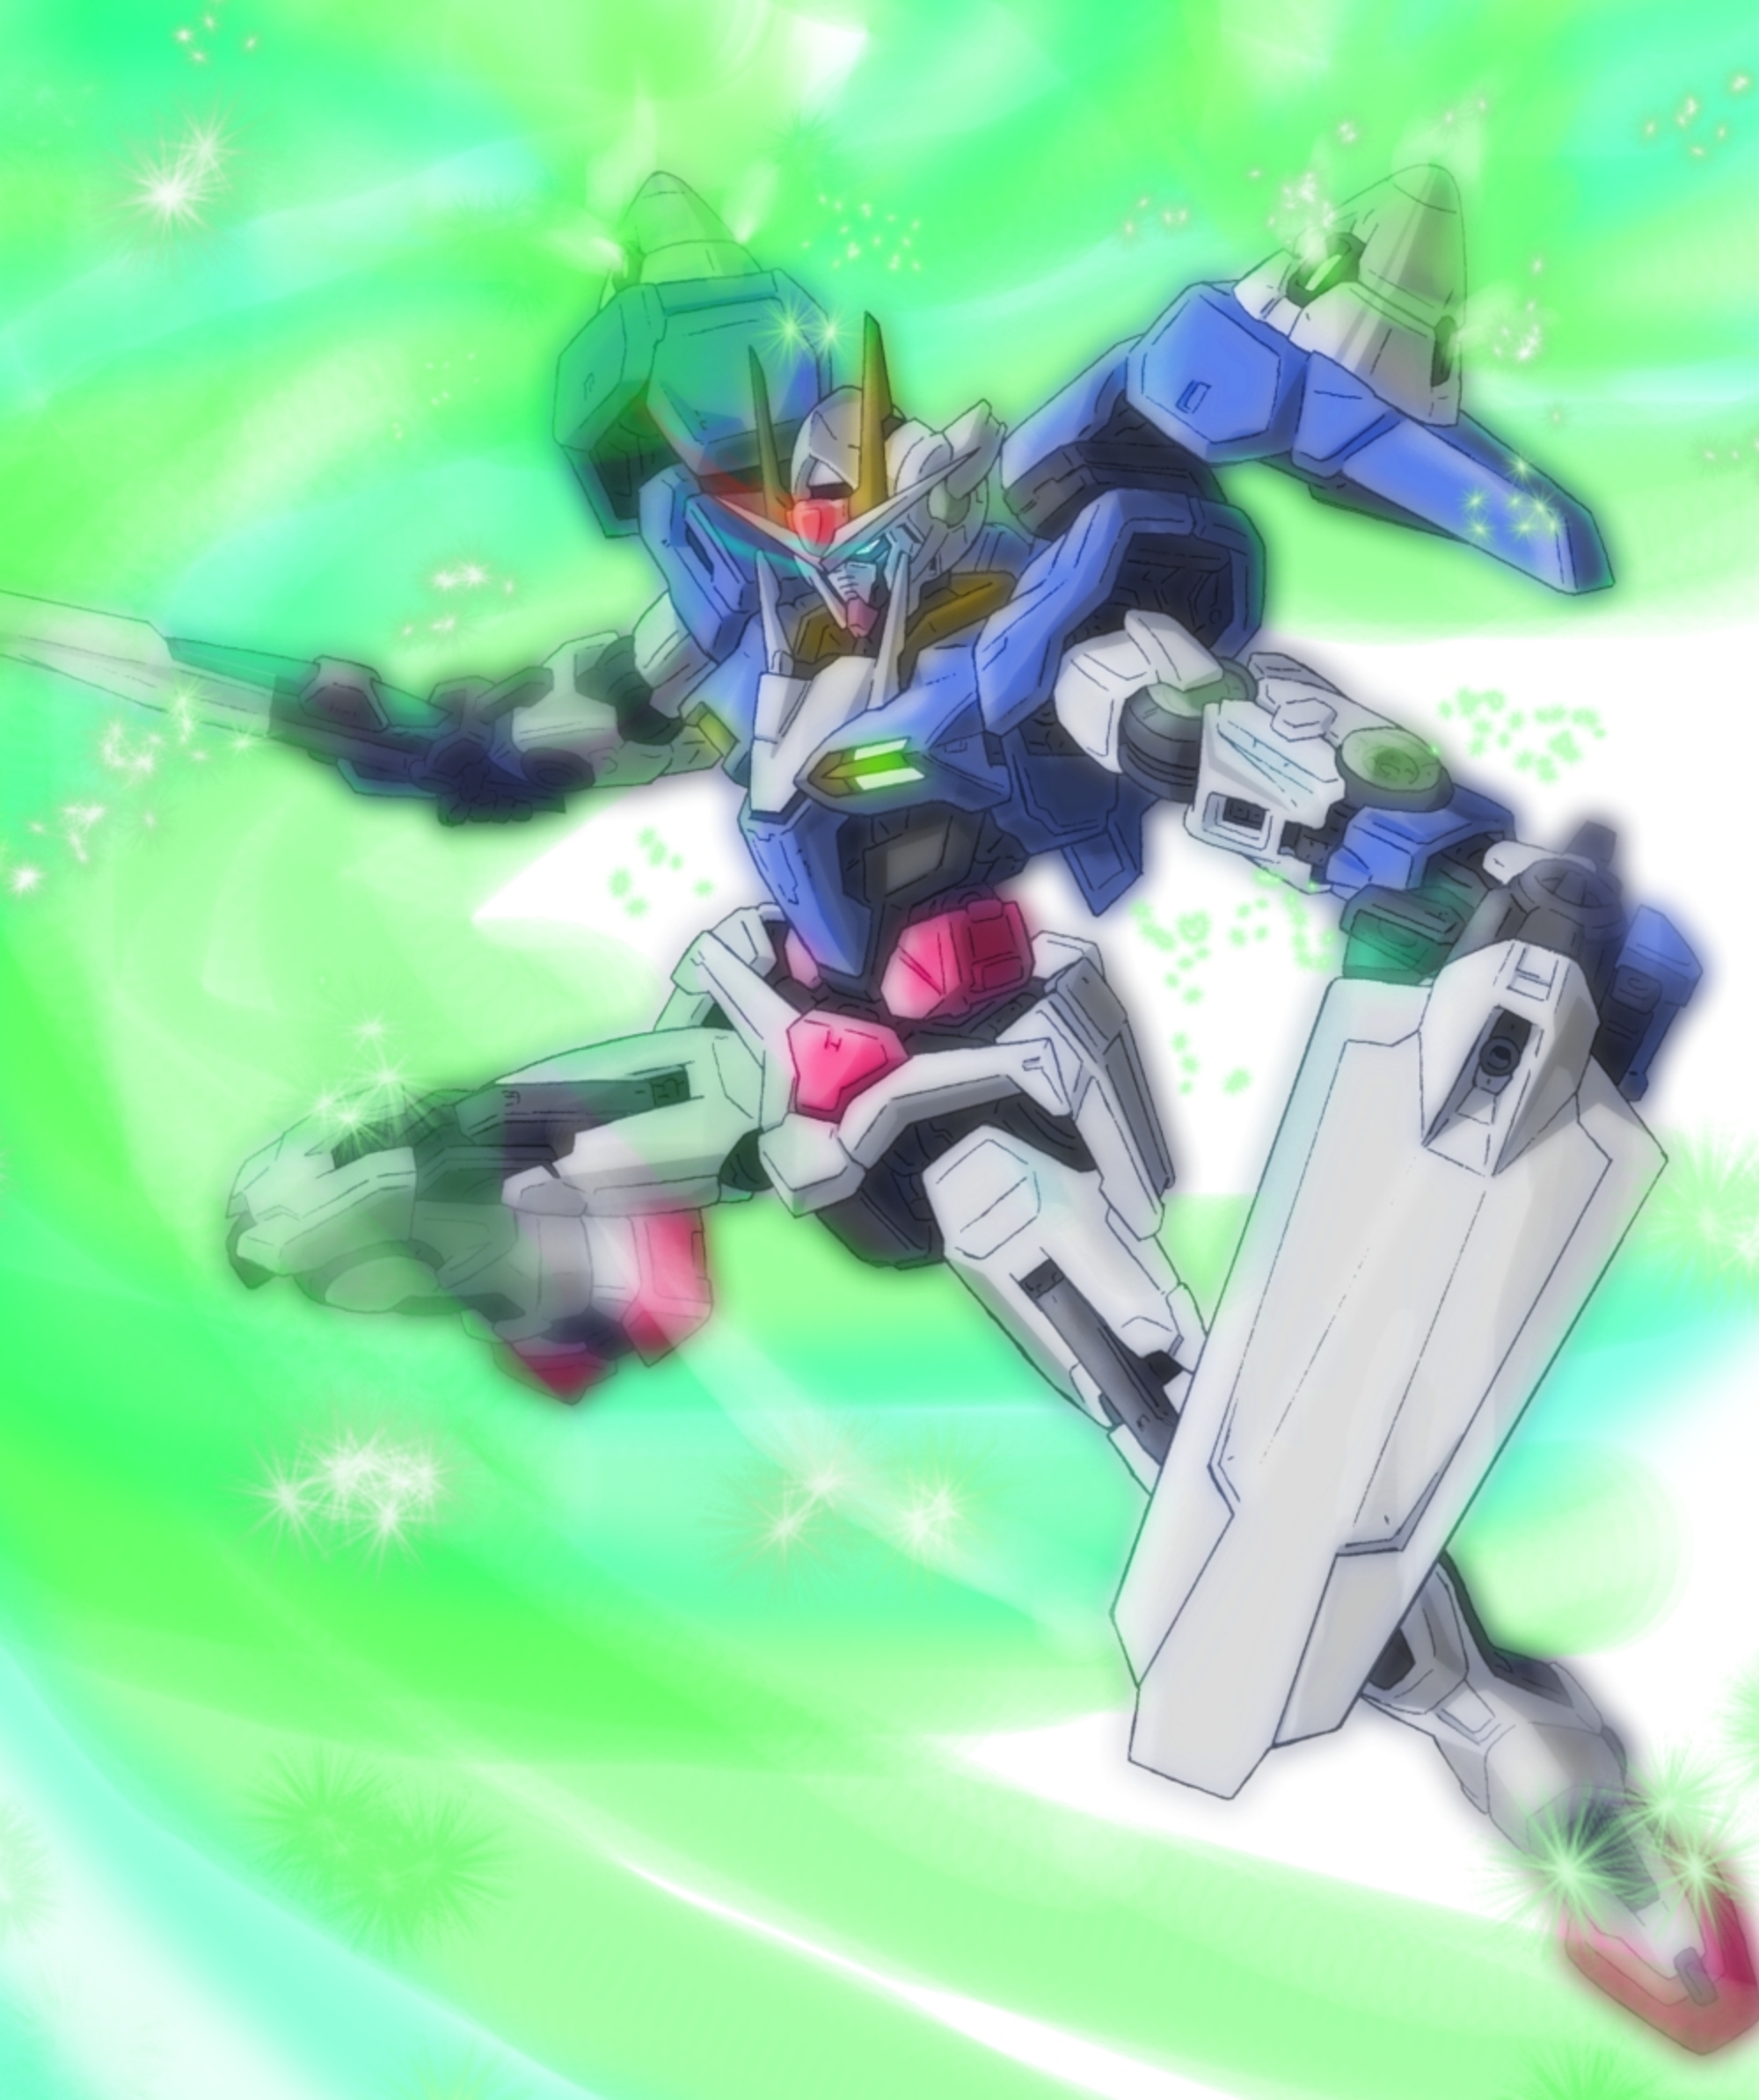 00 Gundam Mobile Suit Gundam 00 Anime Mechs Gundam Super Robot Wars Artwork Digital Art Fan Art 2000x2388